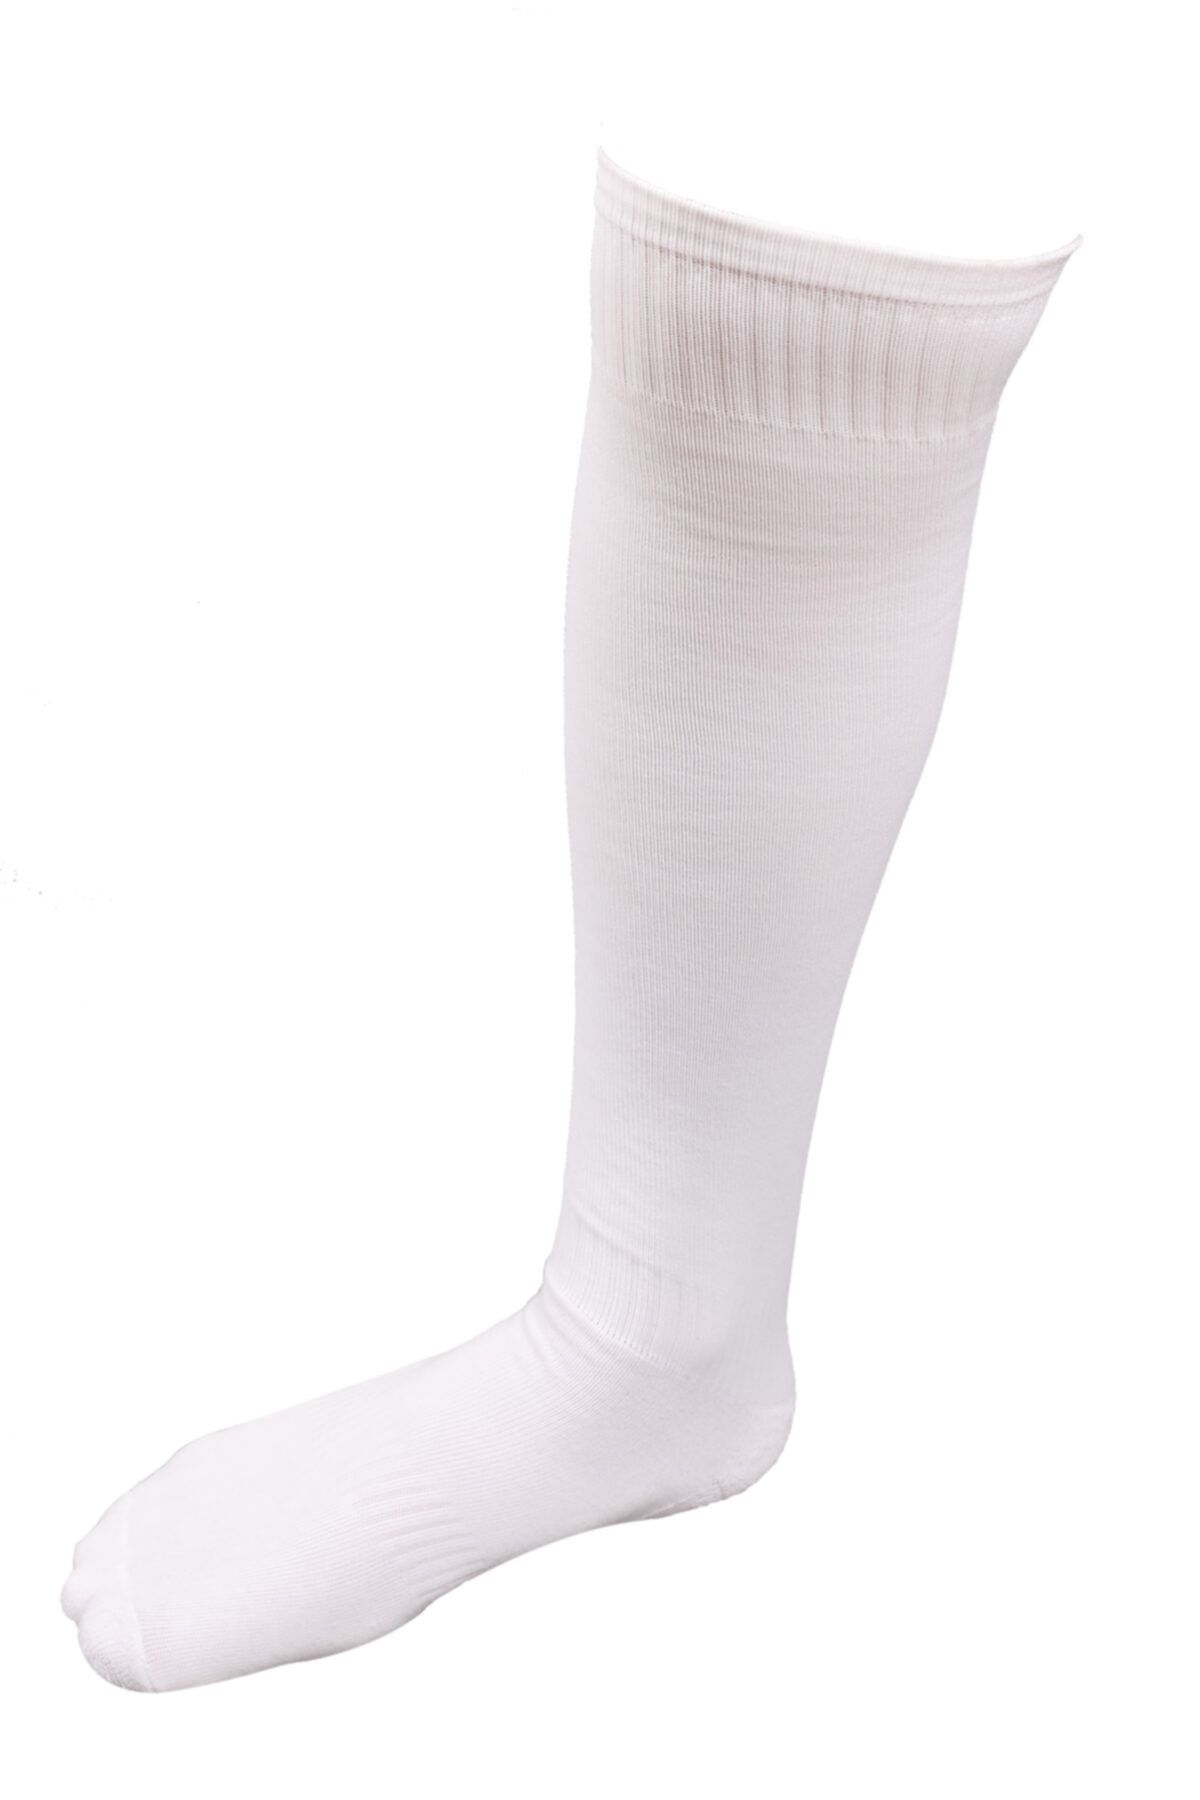 SCHMILTON Erkek Lüks Futbol Çorabı 6 Çift